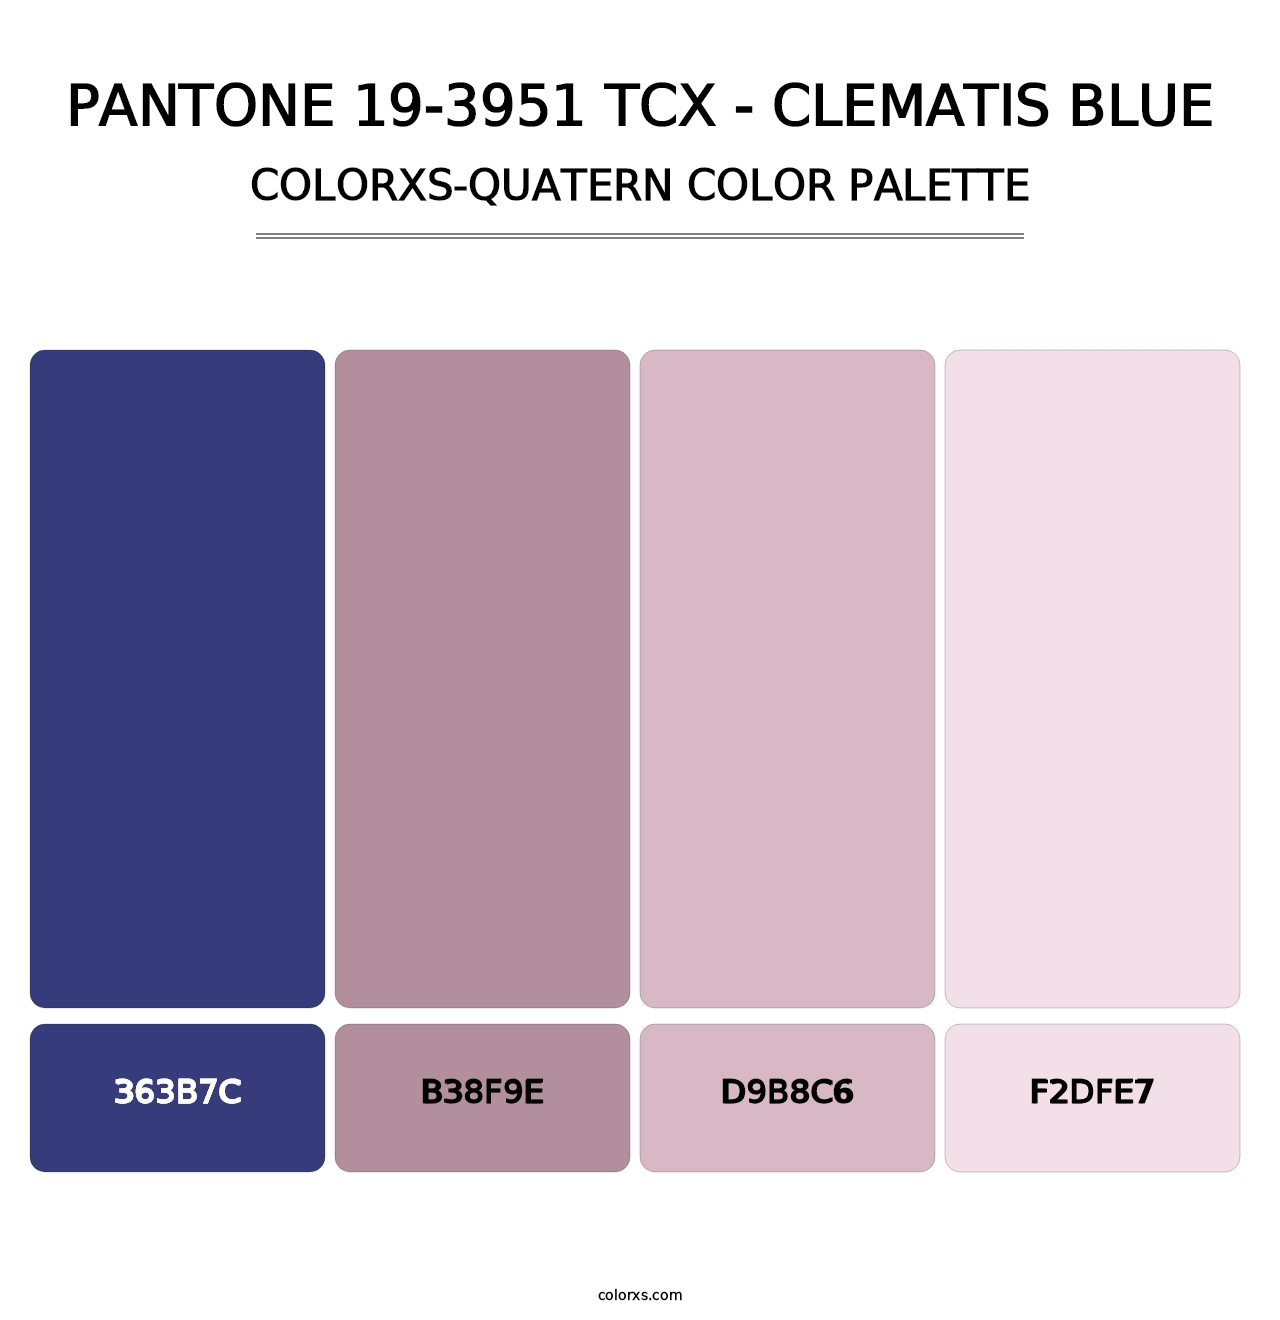 PANTONE 19-3951 TCX - Clematis Blue - Colorxs Quatern Palette